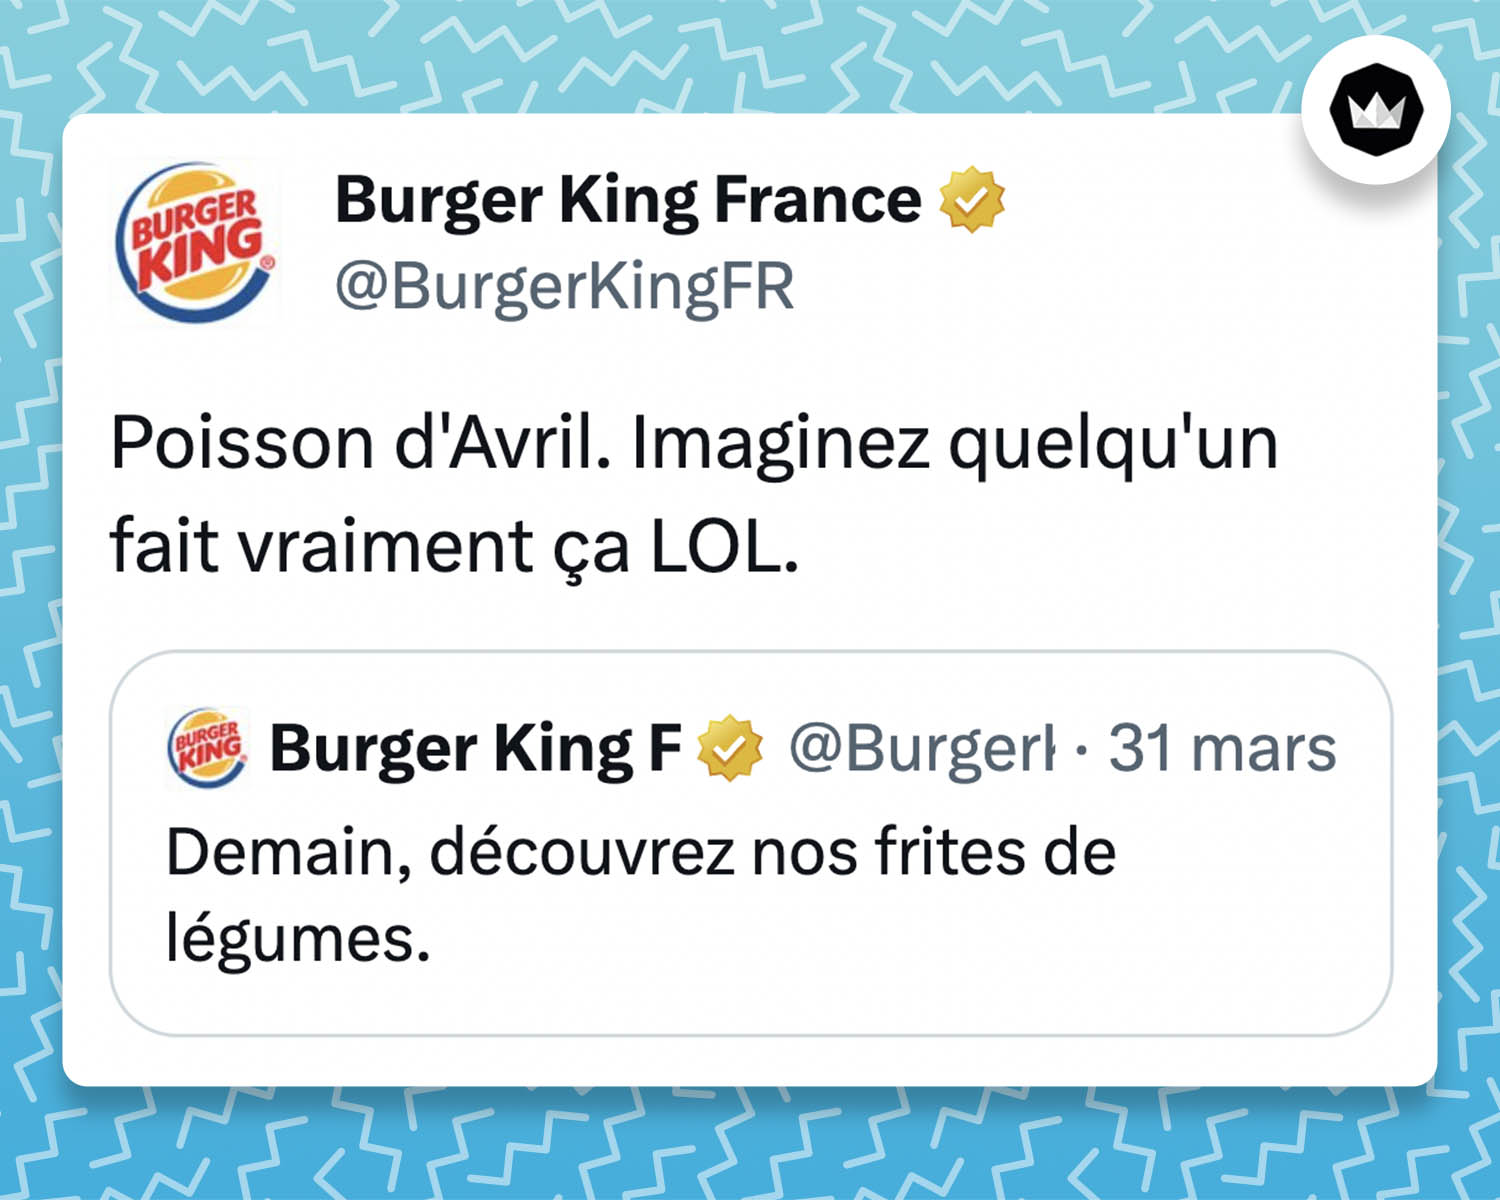 tweet de Burger King France : 
"Poisson d'Avril. Imaginez quelqu'un fait vraiment ça LOL."

Ils répondaient à leur tweet de la veille : 
"Demain, découvrez nos frites de légumes."